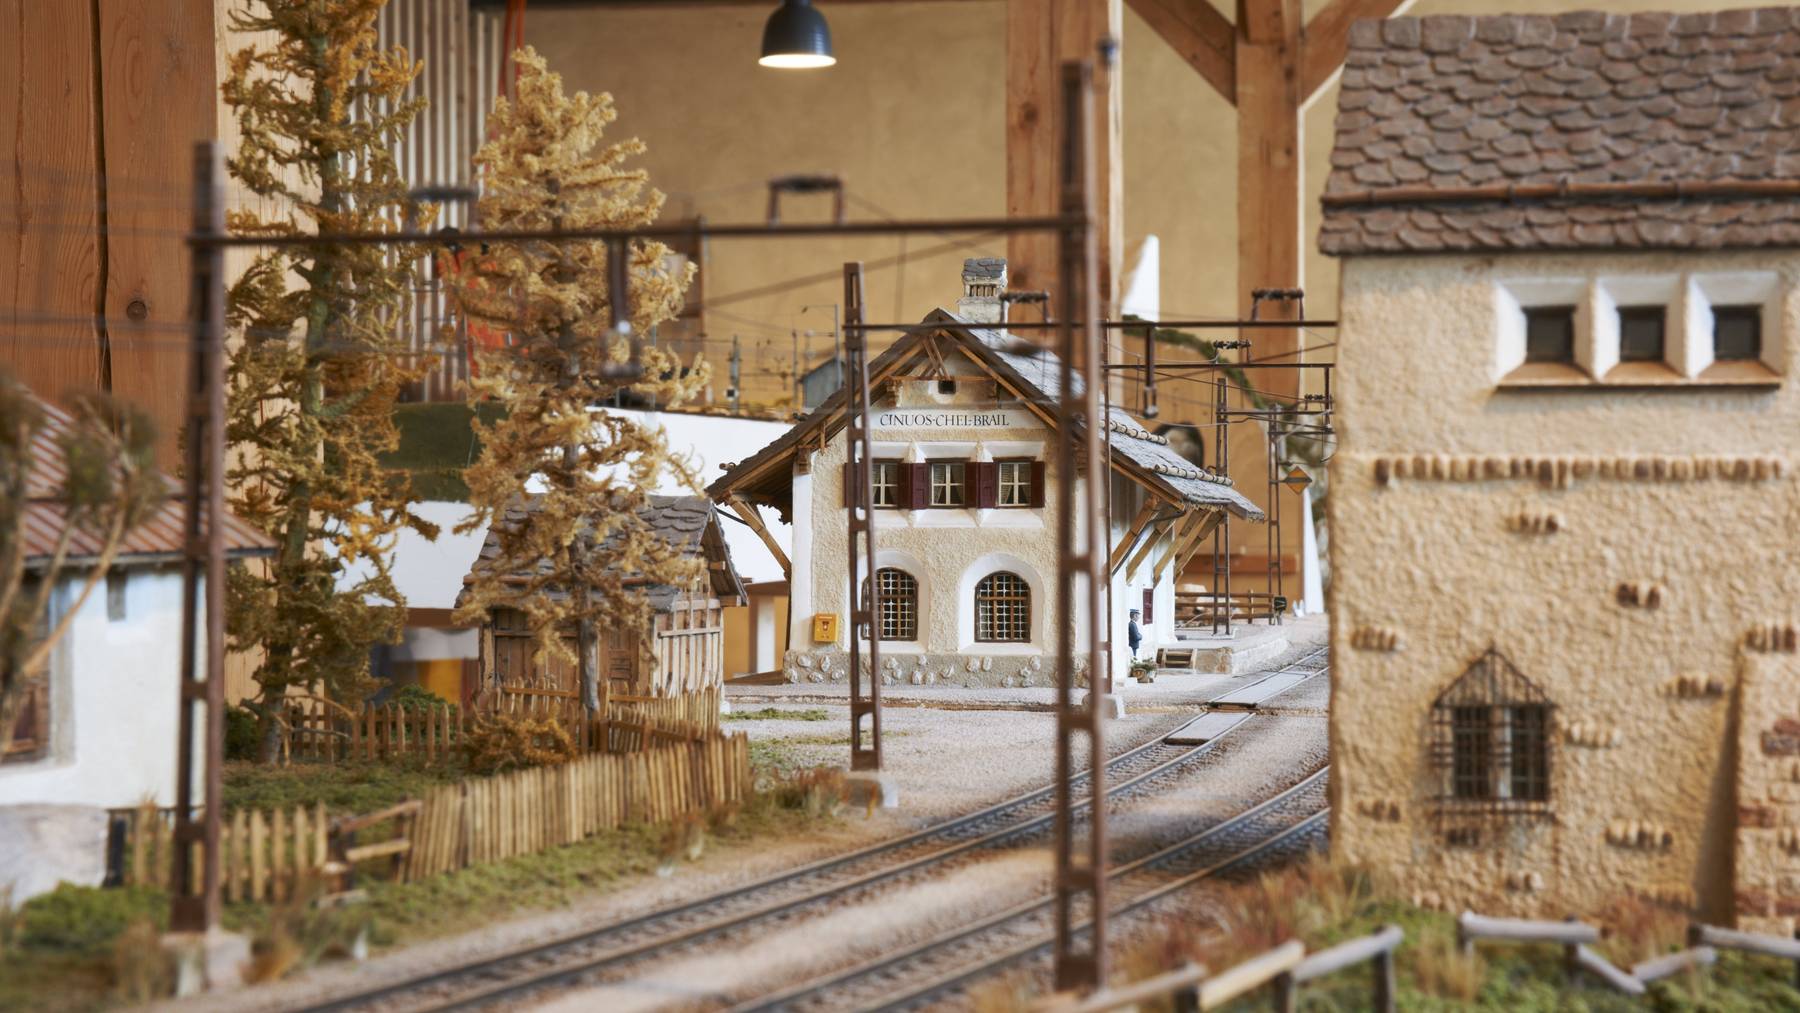 Im Bahnhmuseum Albula wird die Geschichte der Rhätischen Bahn aufgezeigt - mit multimedialen Darstellungen und einer Modelleisenbahn.